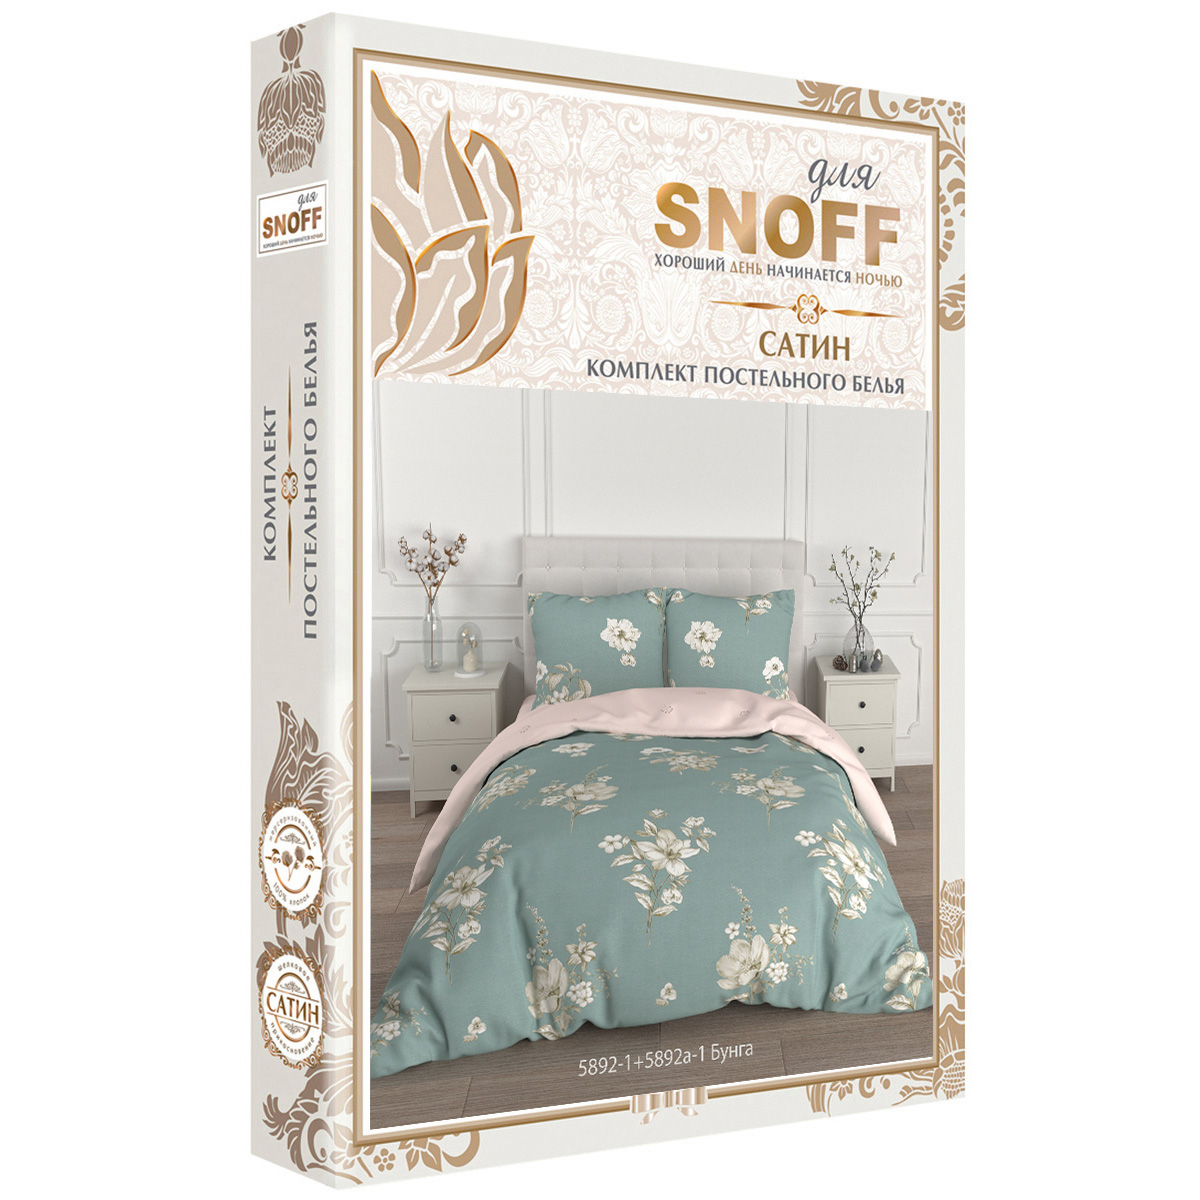 Комплект постельного белья для SNOFF Бунга семейный сатин - фото 7